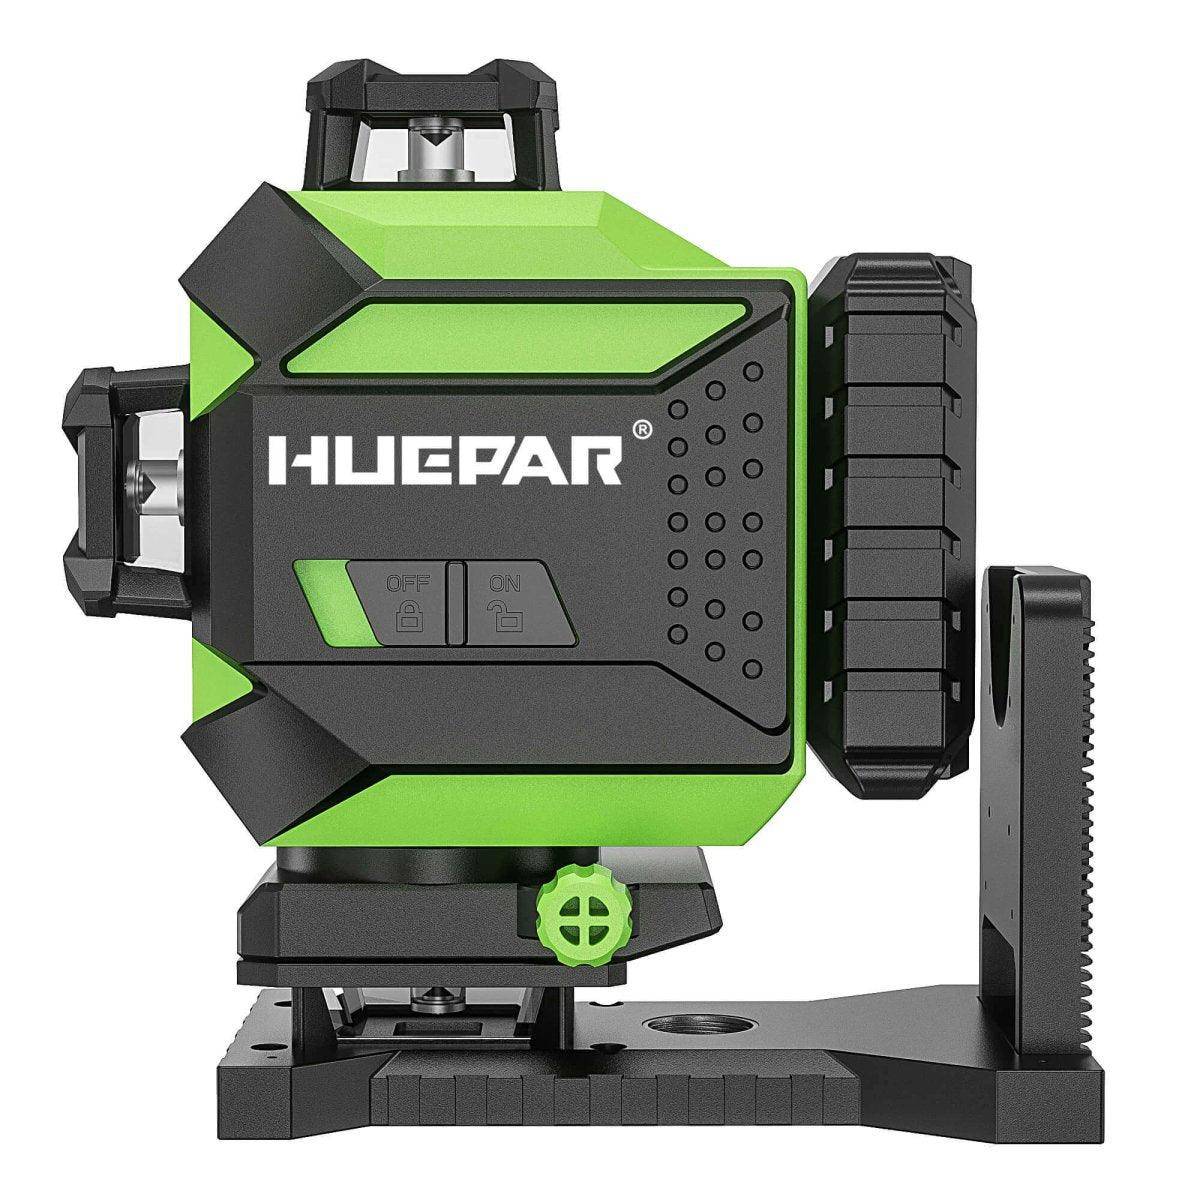 Huepar 704CG - 16 Lines 4x360° Laser Level Self-leveling Tiling Floor Laser Tool with Magnetic Bracket - HUEPAR UK